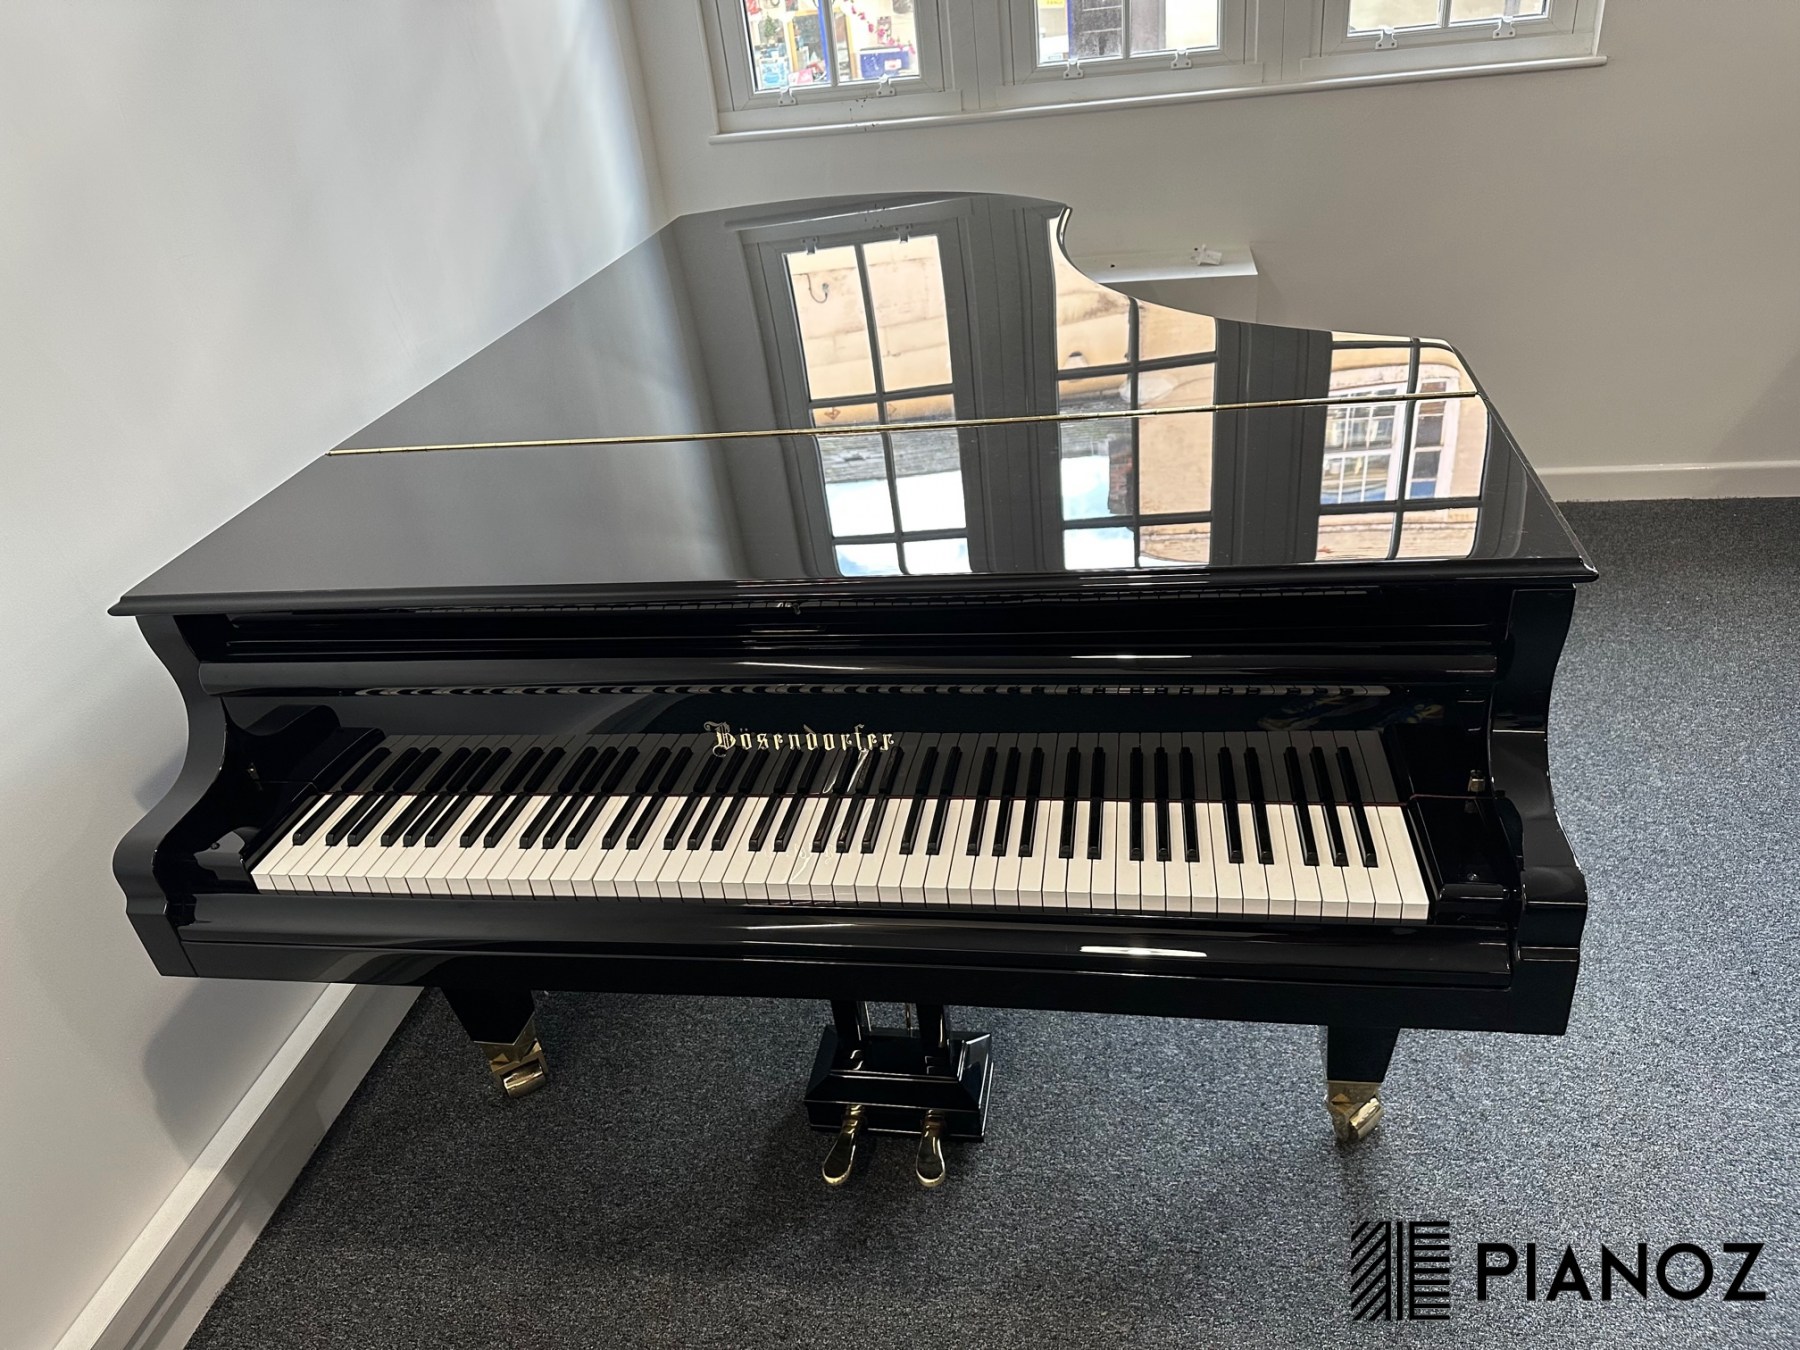 Bosendorfer 225 Semi Concert Grand piano for sale in UK